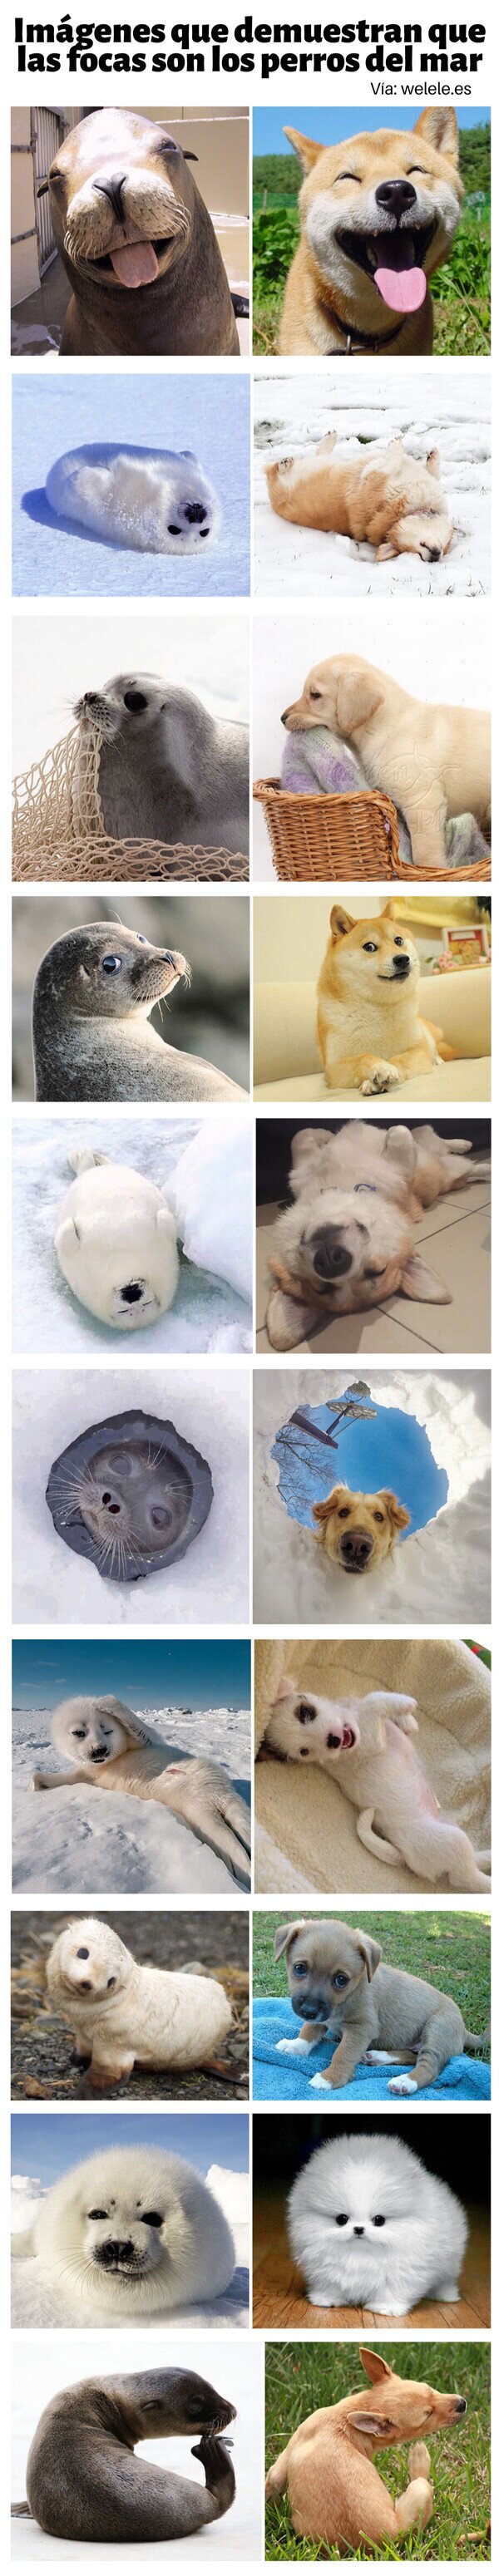 animales,focas,parecidos,perros